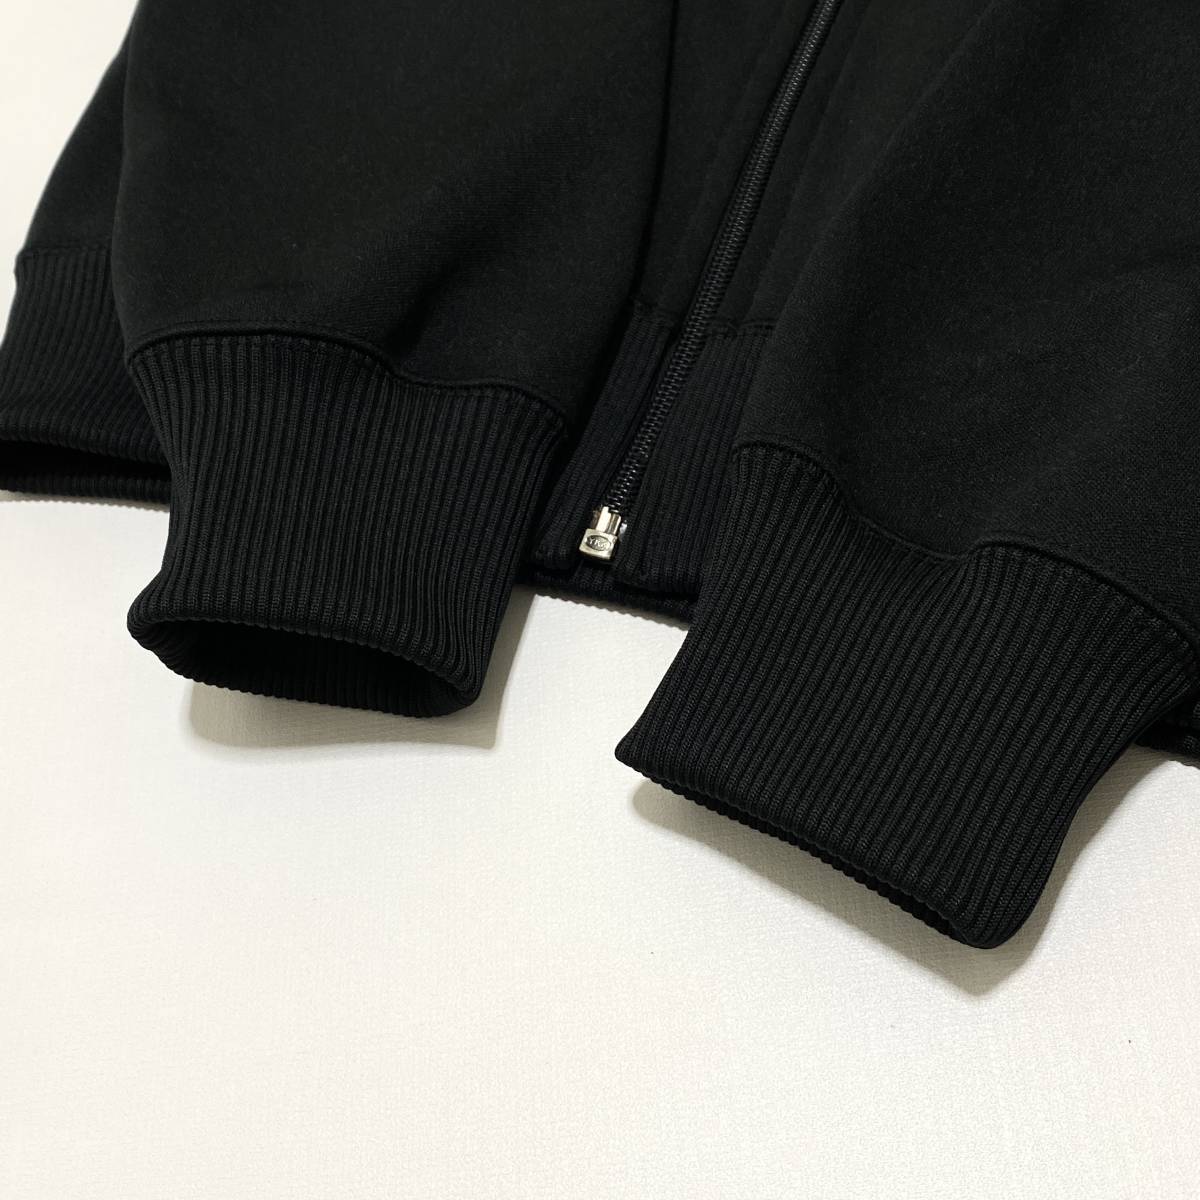  прекрасный Цу .mizuno Mizuno SUPER STAR джерси спортивная куртка M чёрный мужской retro Vintage 24-0109